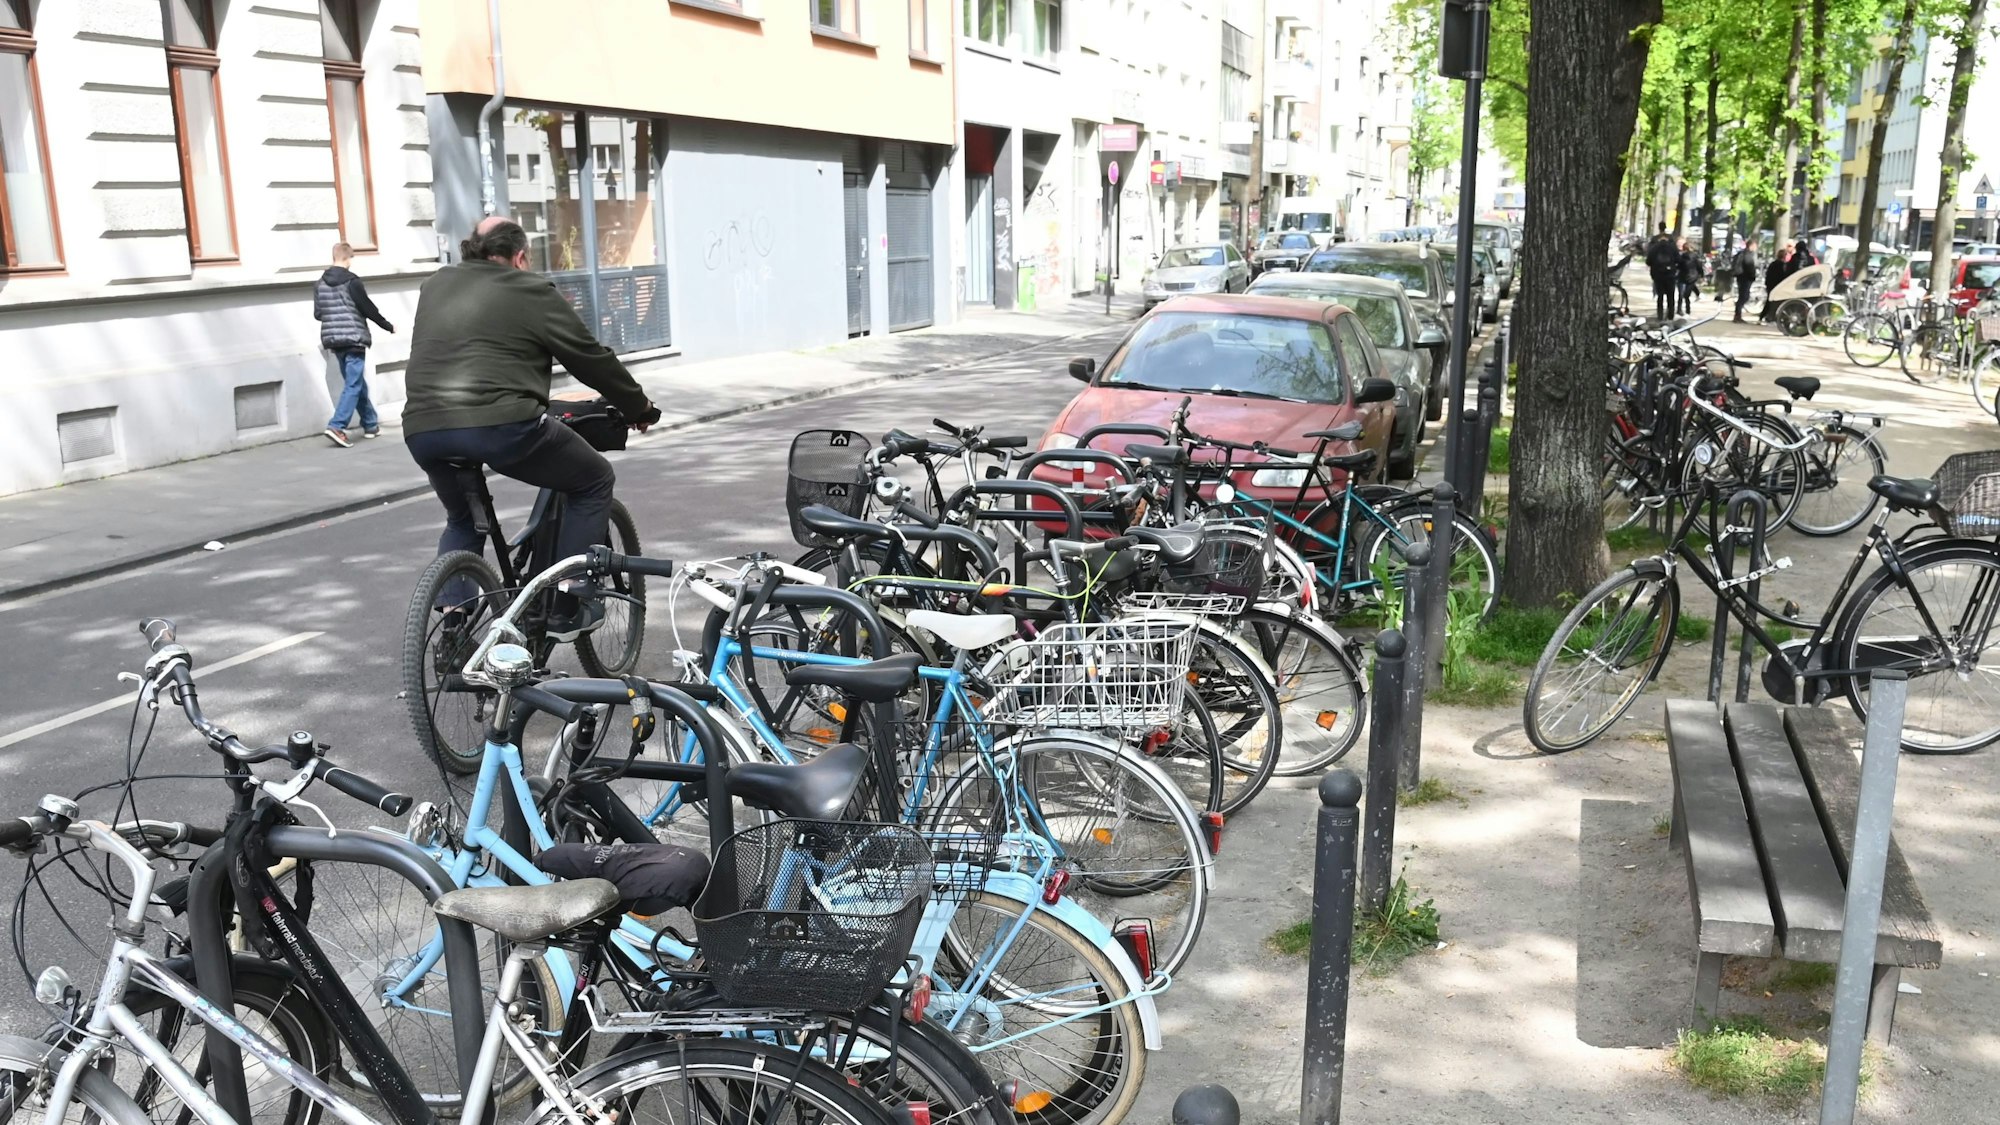 Auf einer Straße in Köln sind dutzende Fahrräder am Straßenrand zu sehen.